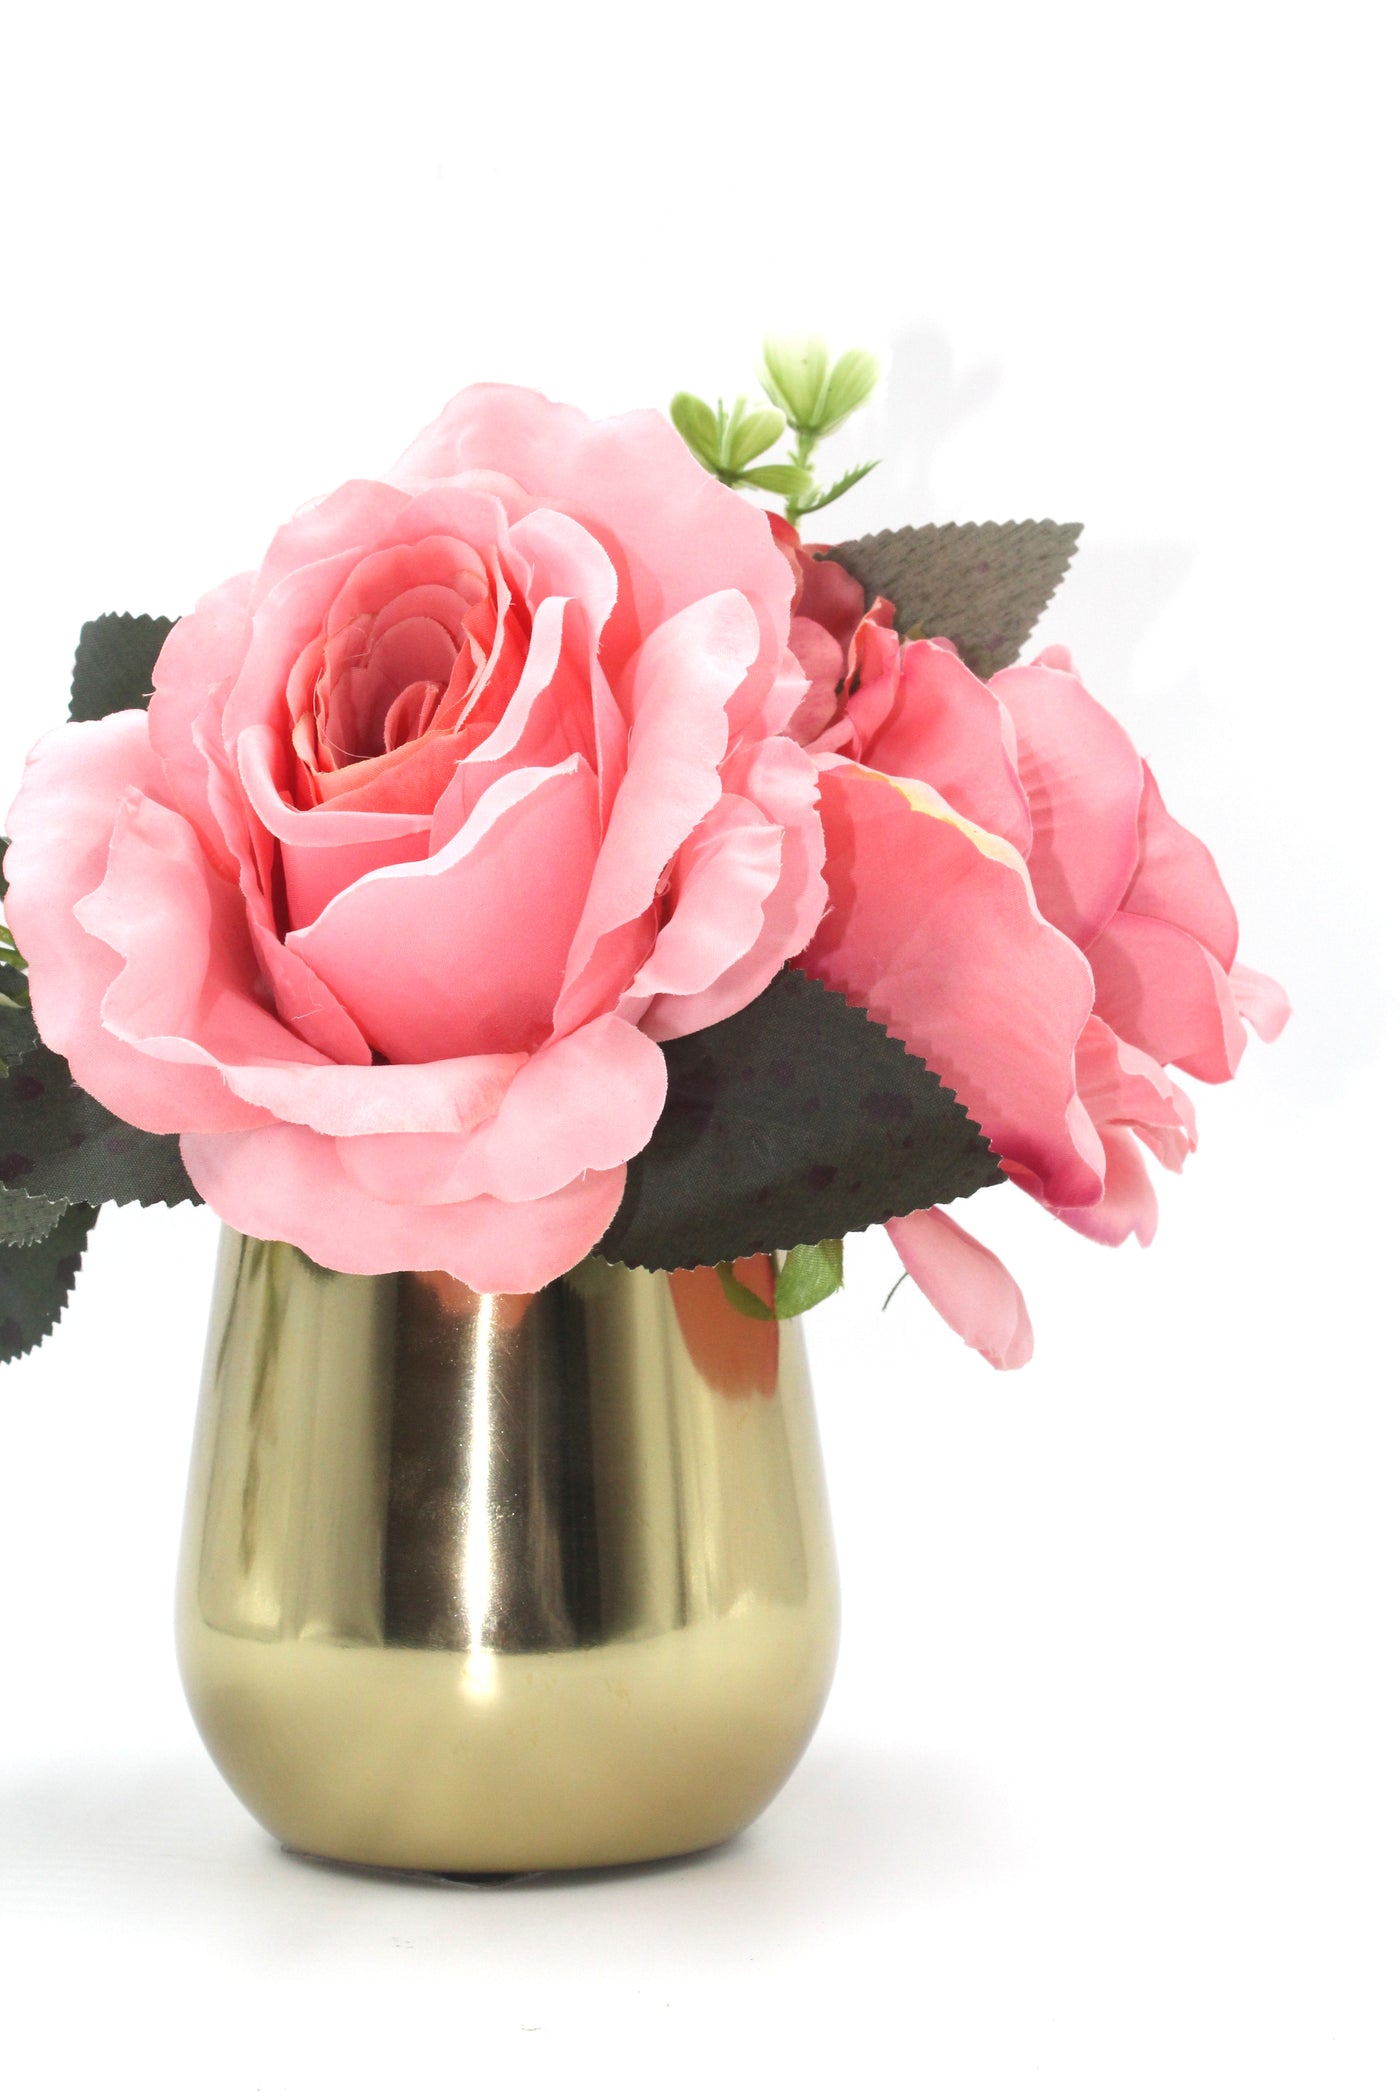 Flowery..!! Fresho pink flowers in golden metal vase